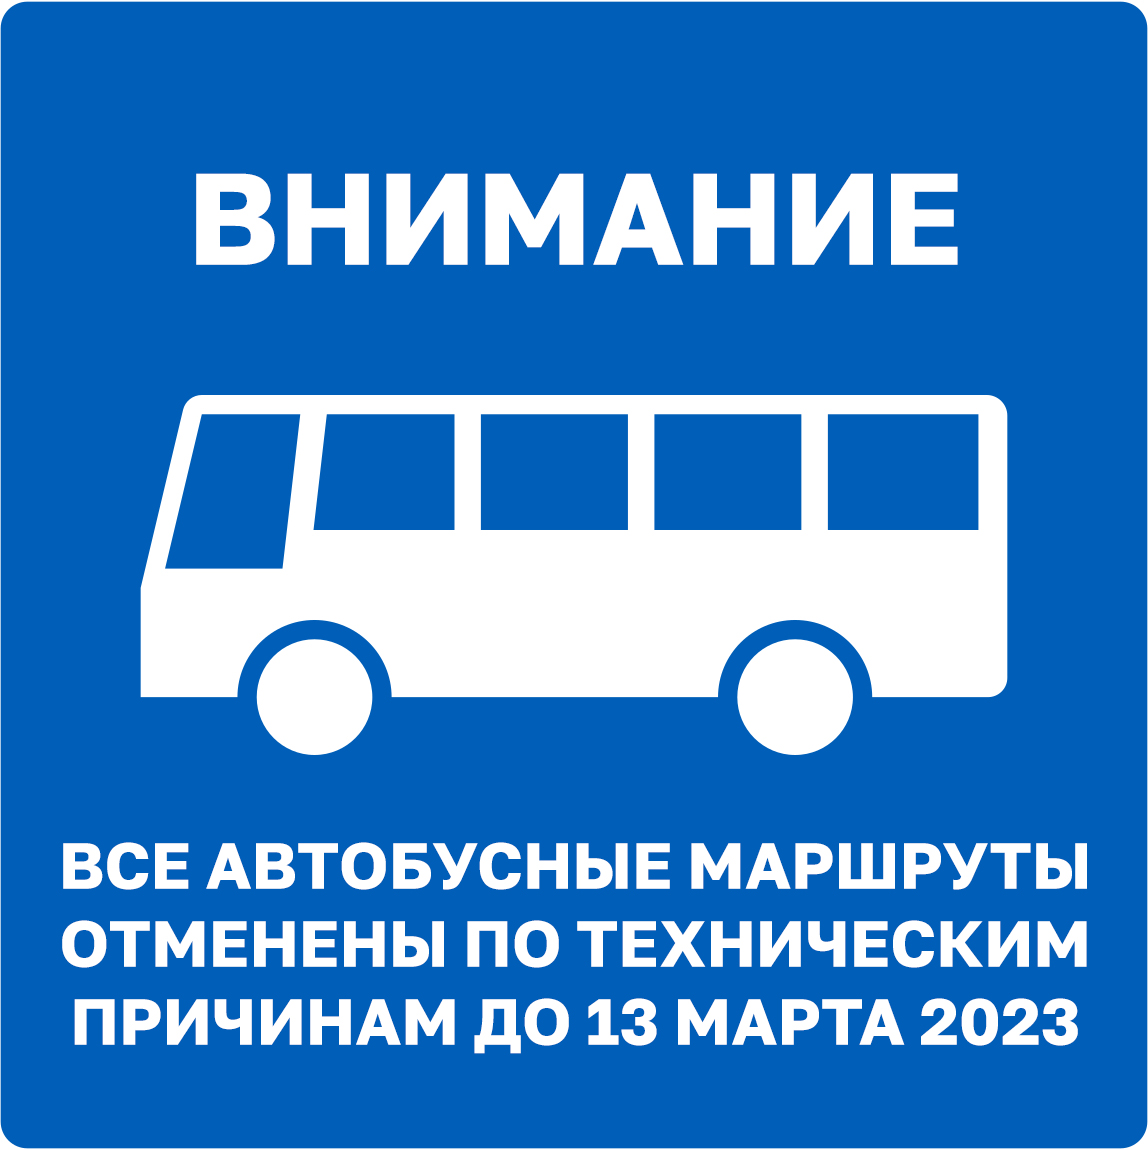 Все автобусные маршруты отменены по техническим причинам до понедельника, 13 марта 2023